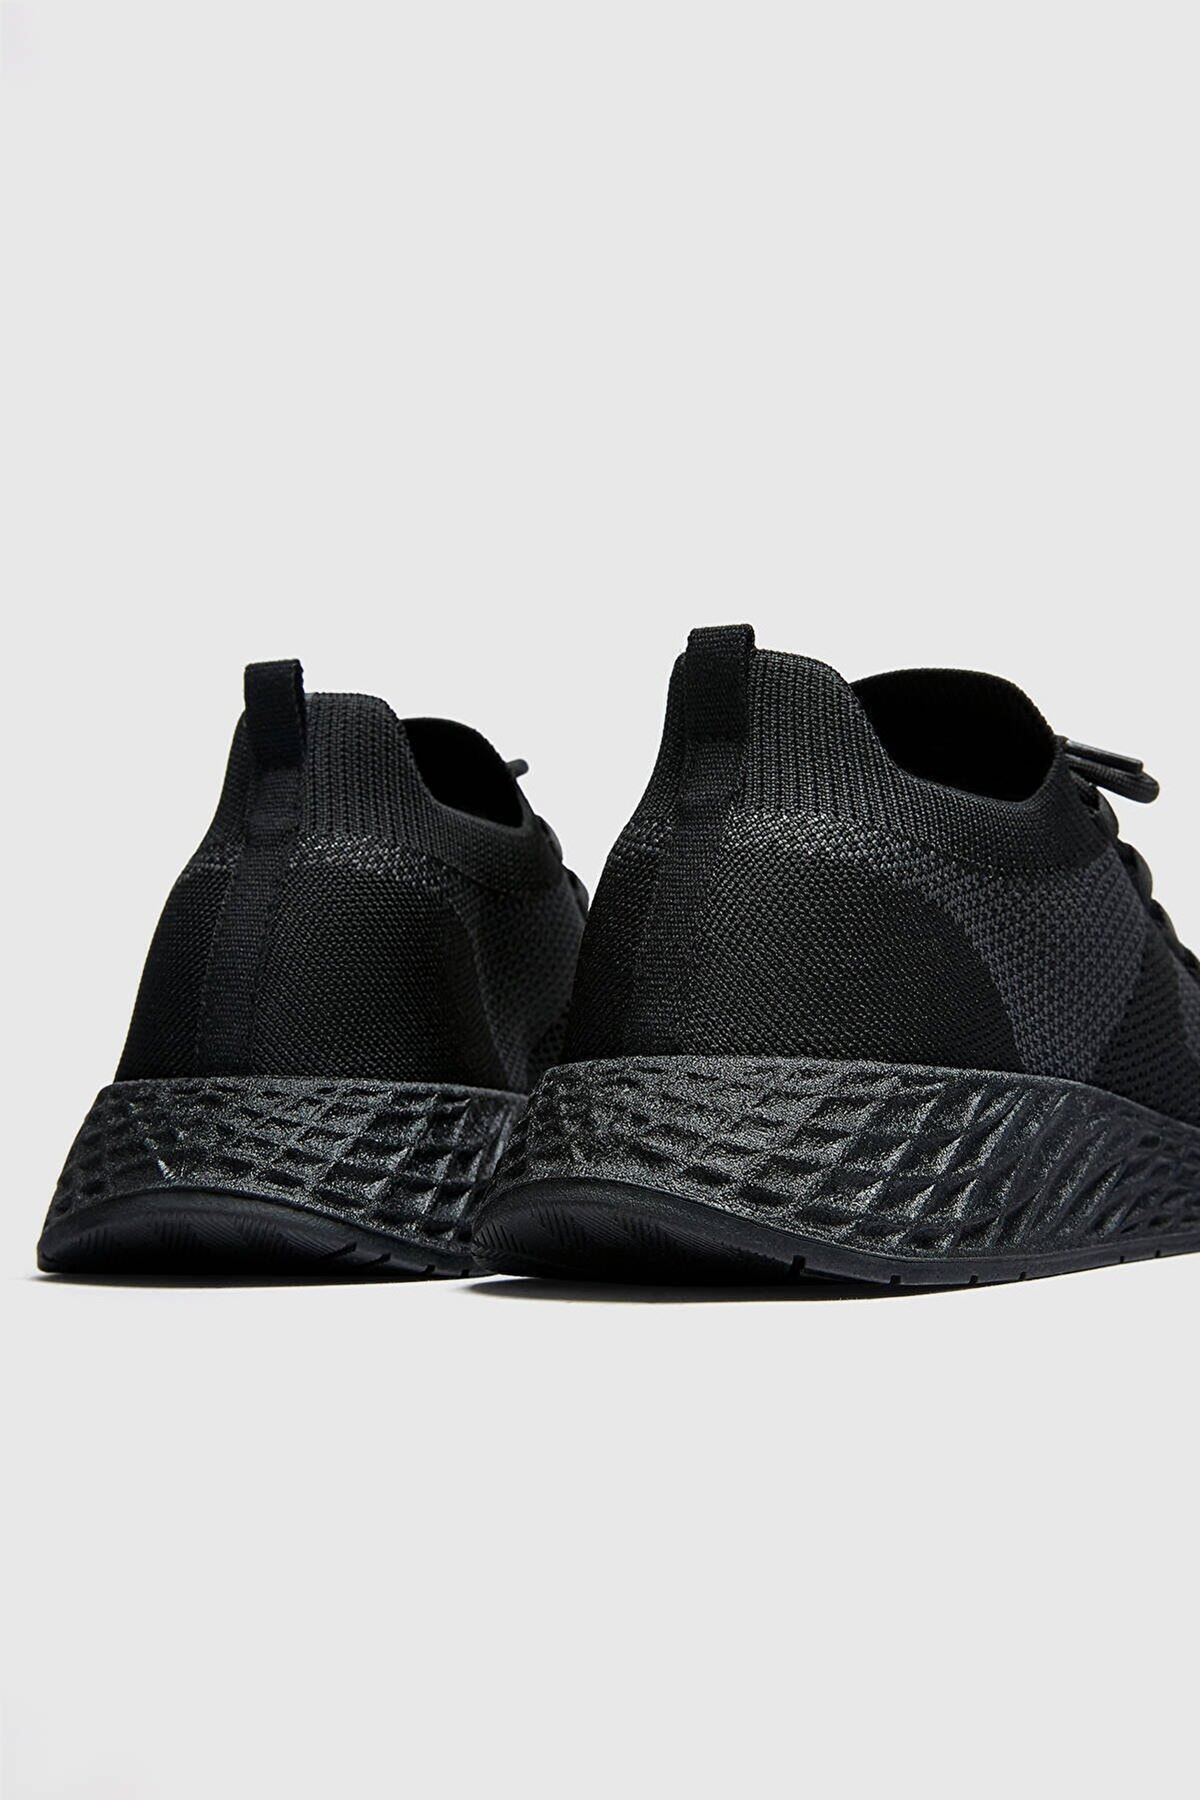 Boy Uzatan Gizli Topuklu Örgü Siyah Spor Ayakkabı MYY369